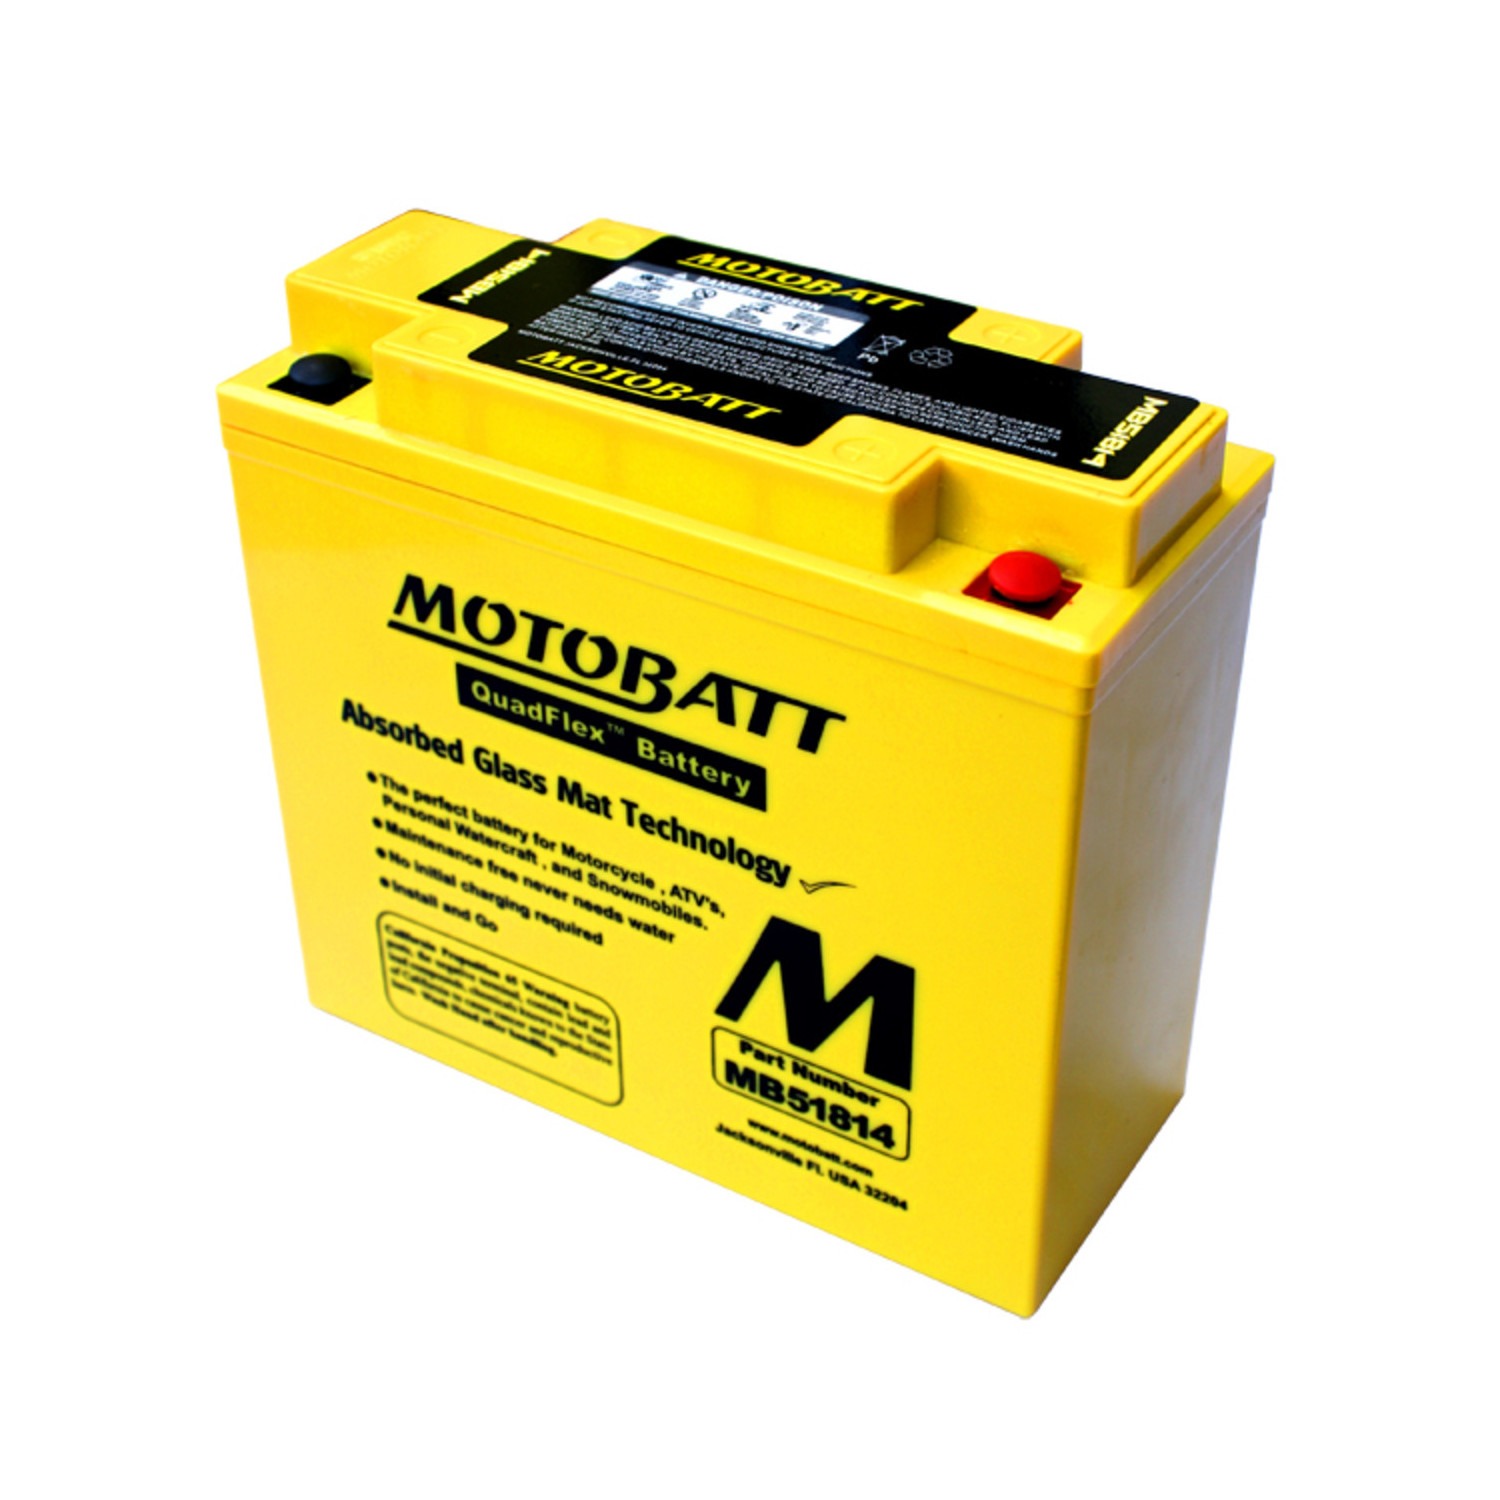 Motobatt – QuadFlex – MB51814 – 22 Ah